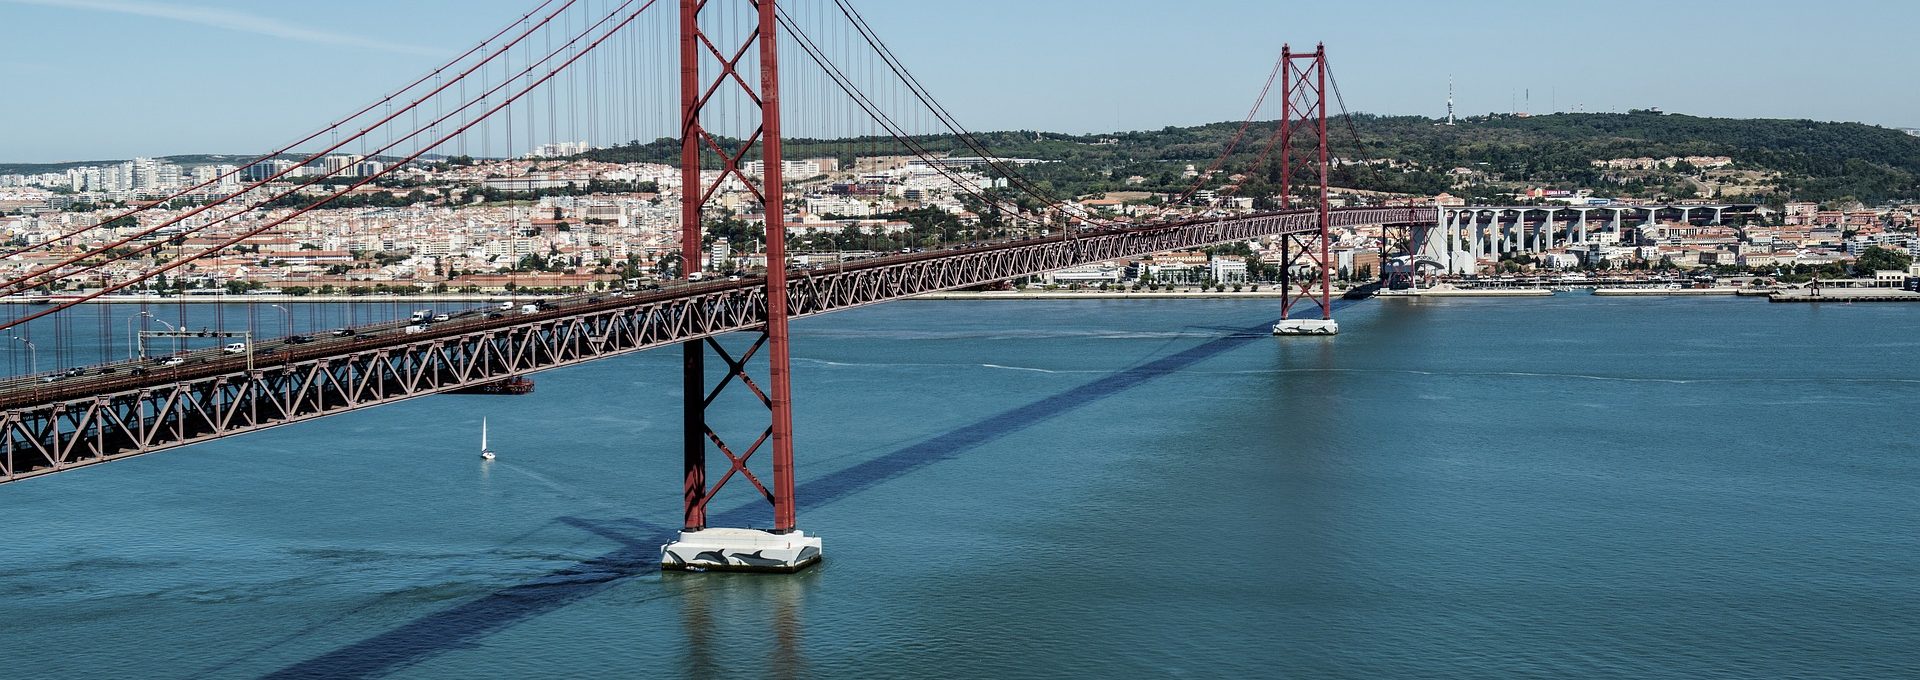 Ponte do rio Tejo em Lisboa